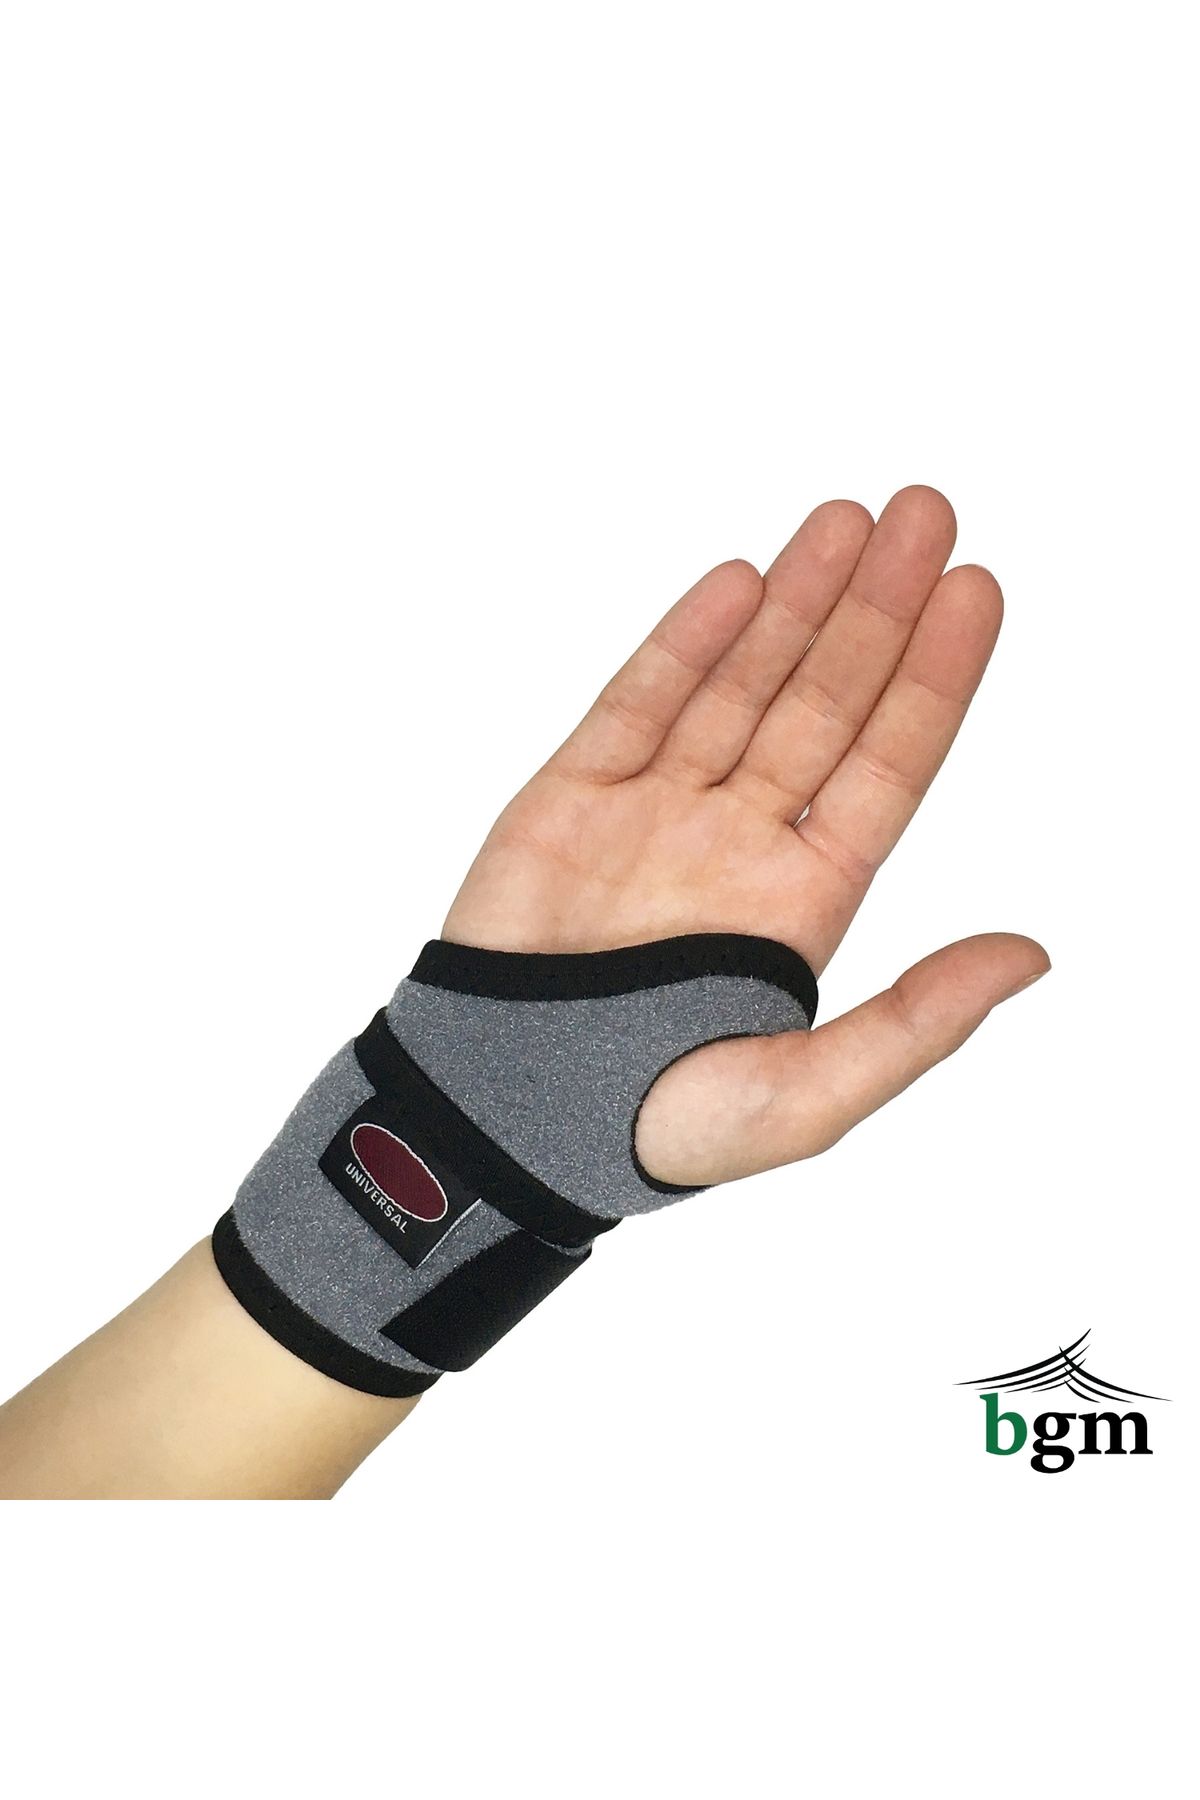 BGM El Bilek Bandajı Yüksek Kalite Elastik Sporcu Bilekliği